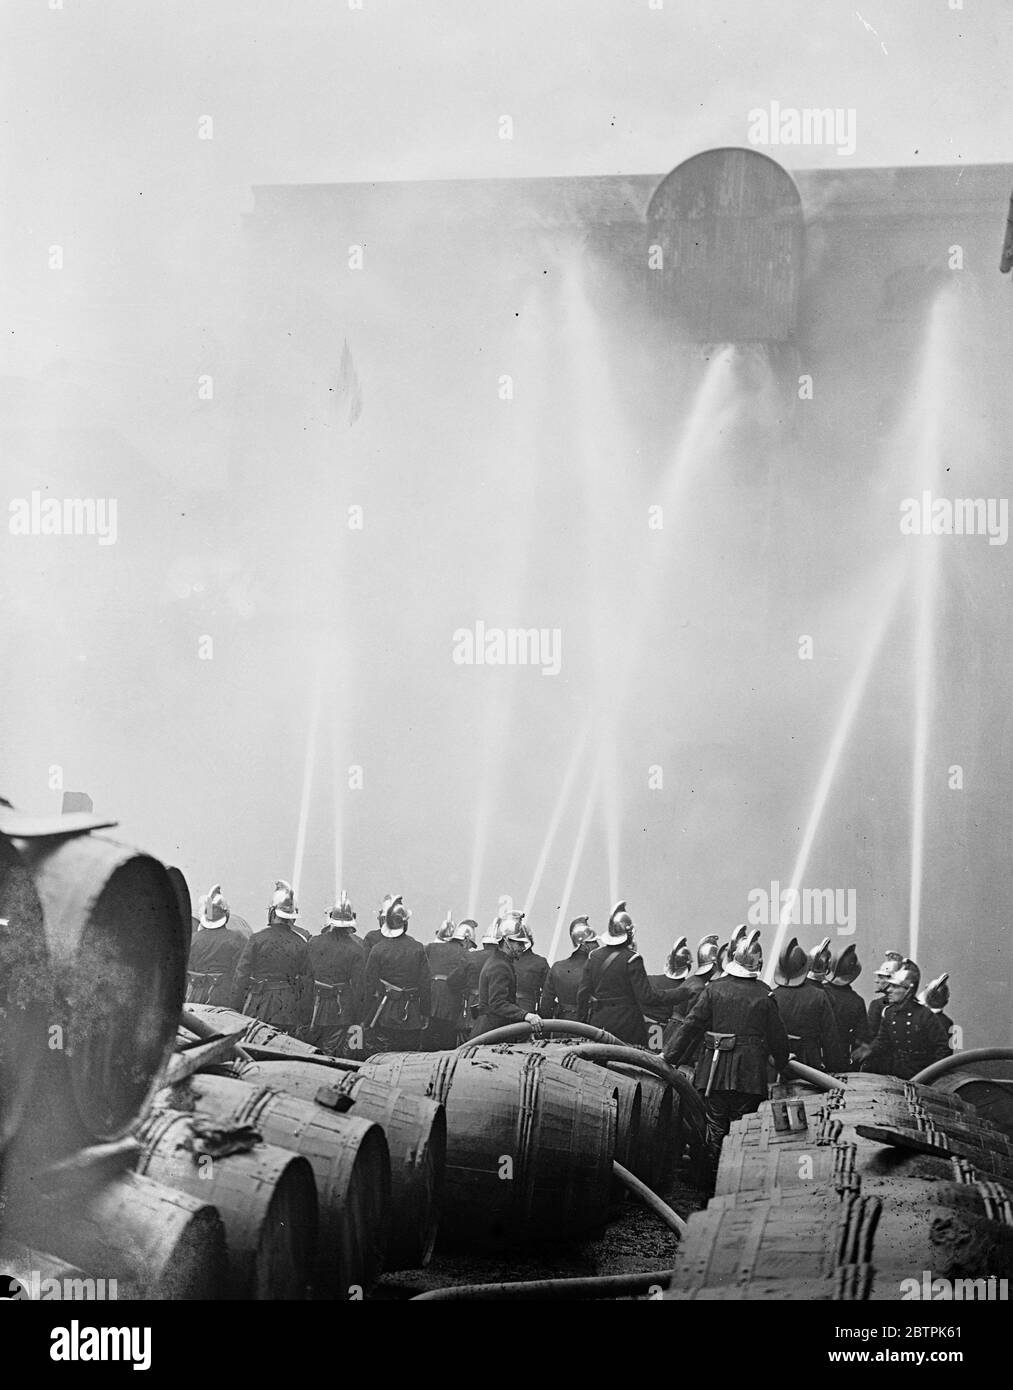 London Rennen Lager Flammen . Carbett ' s Reis Lager in Shad Thames Feuer gefangen und brannte wütend. Foto zeigt, Feuerwehrleute Leitung Schläuche auf das lodernde Gebäude. April 1936 Stockfoto